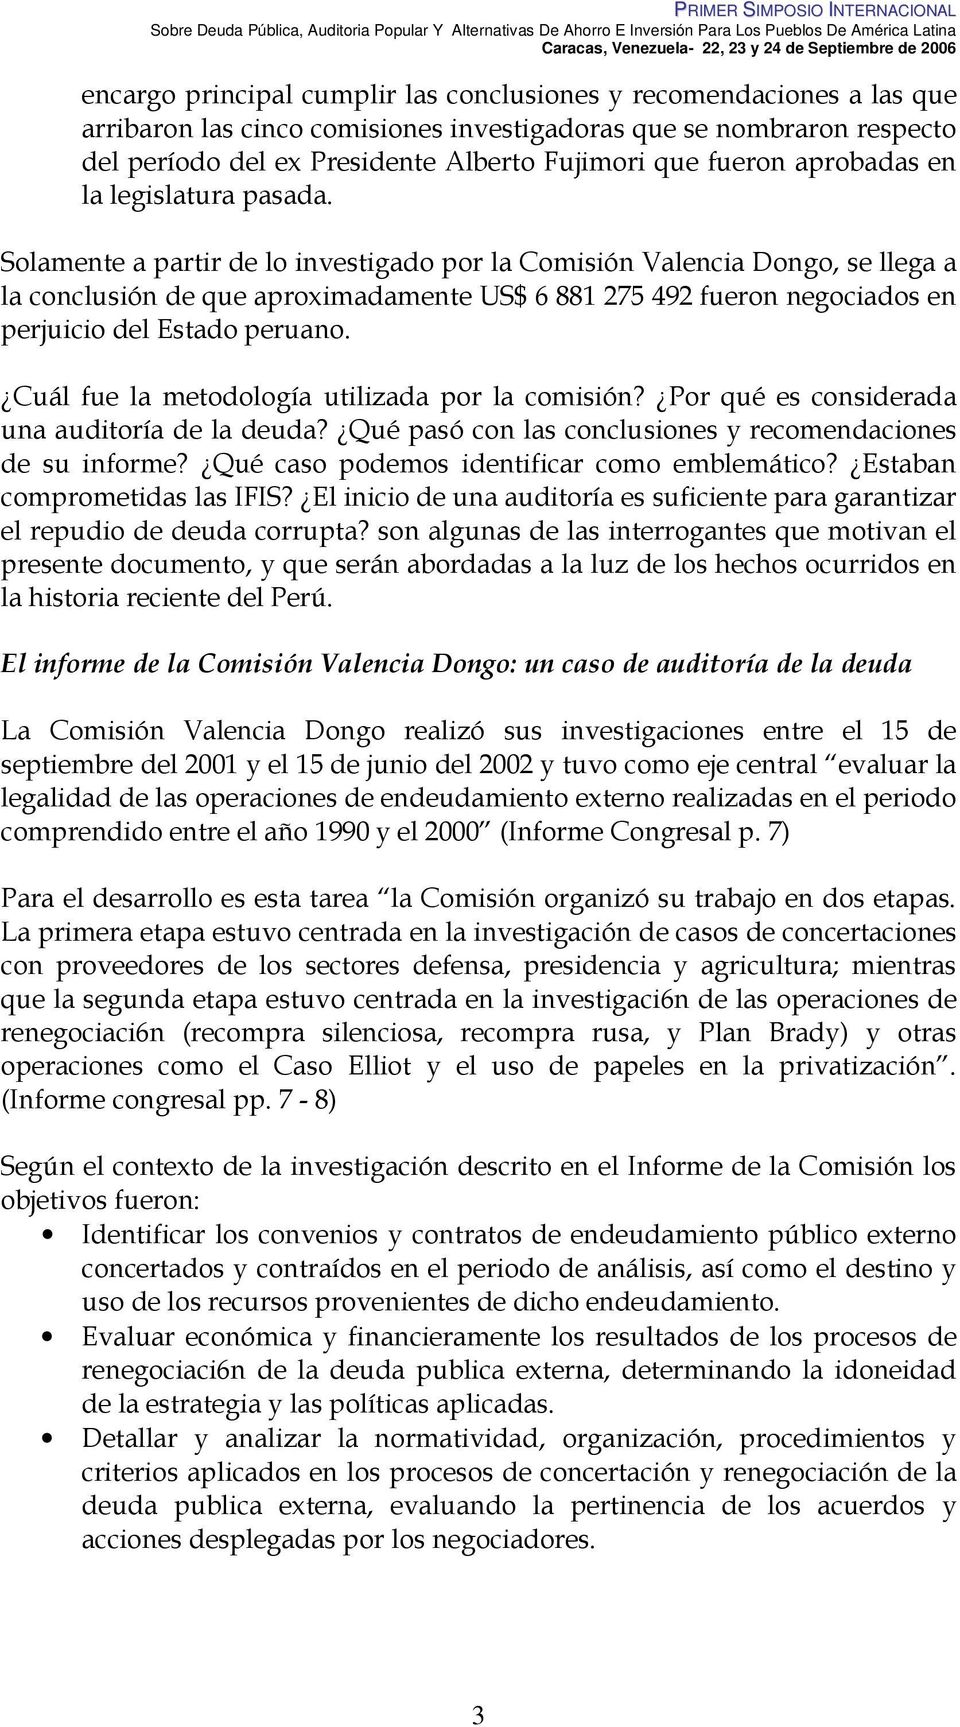 Solamente a partir de lo investigado por la Comisión Valencia Dongo, se llega a la conclusión de que aproximadamente US$ 6 881 275 492 fueron negociados en perjuicio del Estado peruano.